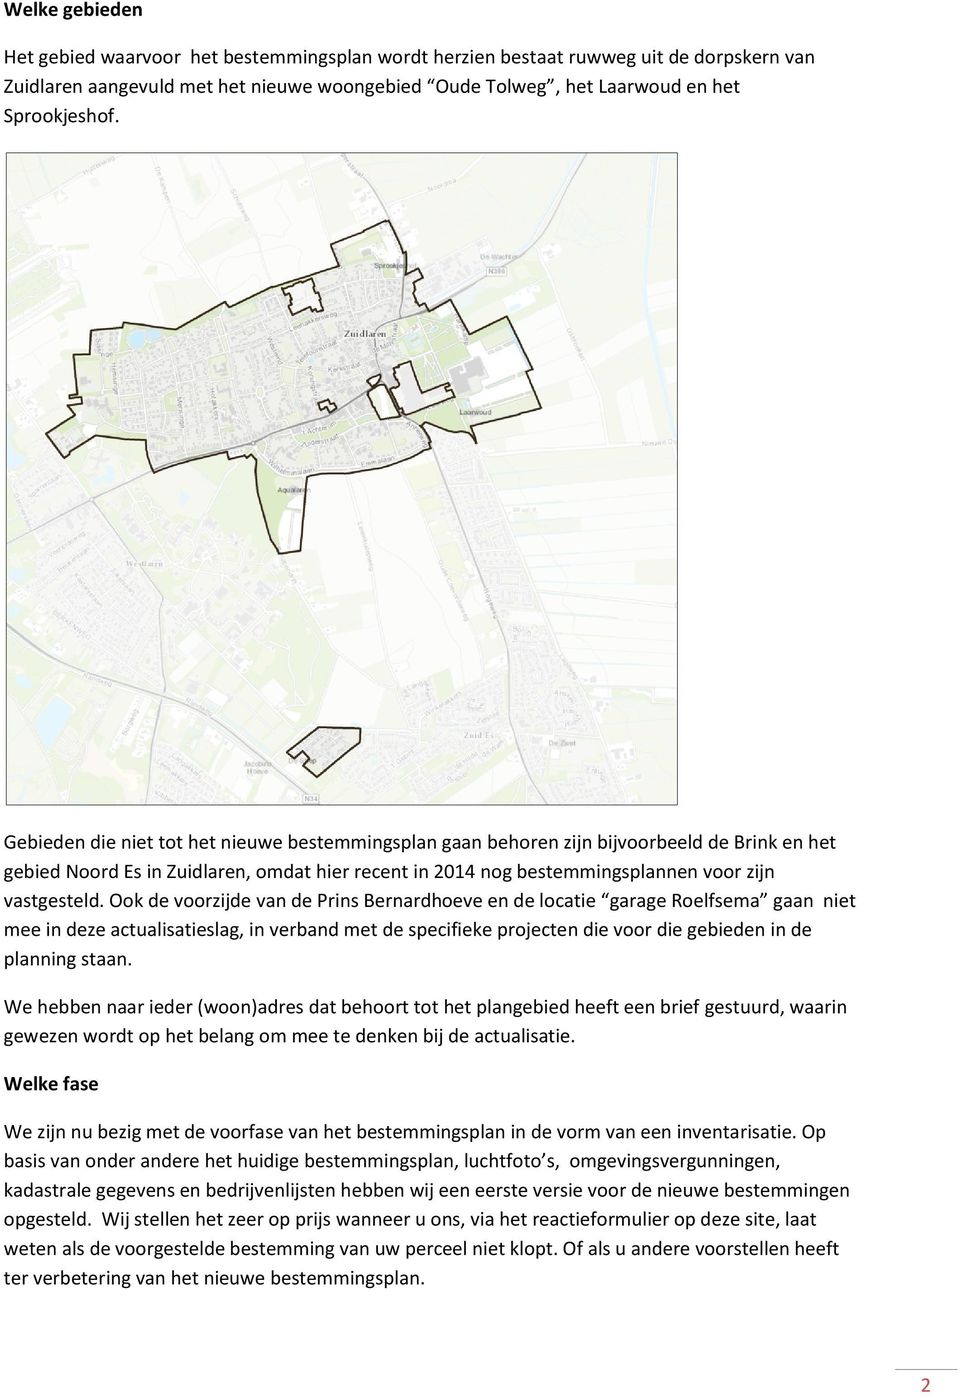 Ook de voorzijde van de Prins Bernardhoeve en de locatie garage Roelfsema gaan niet mee in deze actualisatieslag, in verband met de specifieke projecten die voor die gebieden in de planning staan.